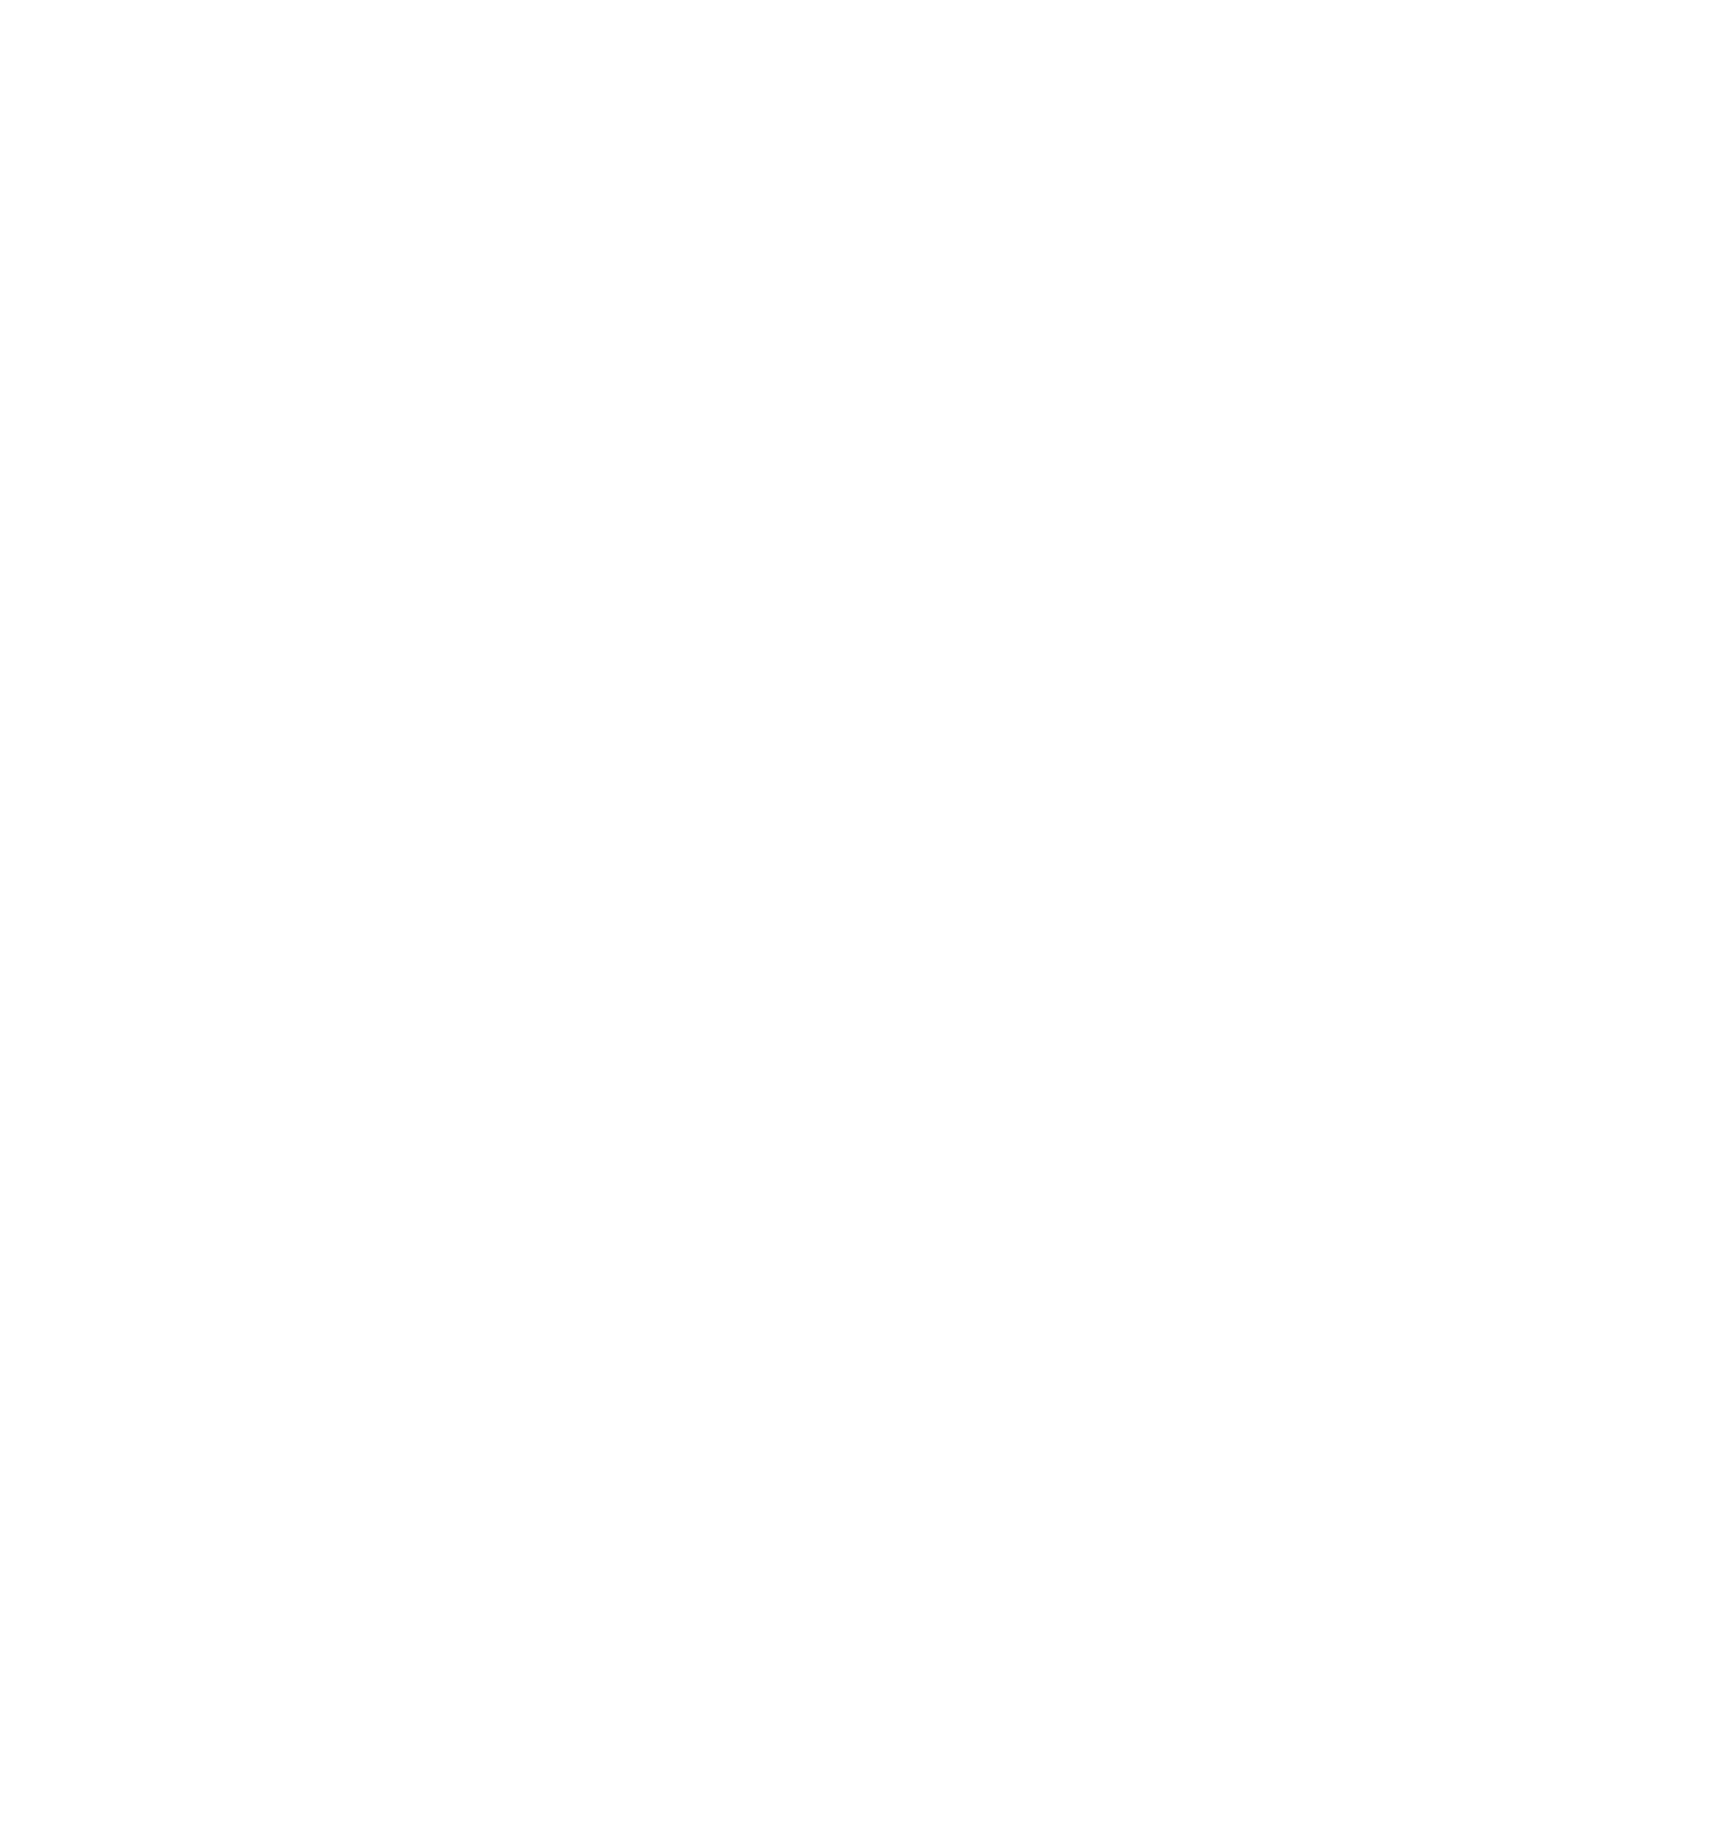 Swift Bunny logo from Western Wealth Communities in Phoenix, Arizona